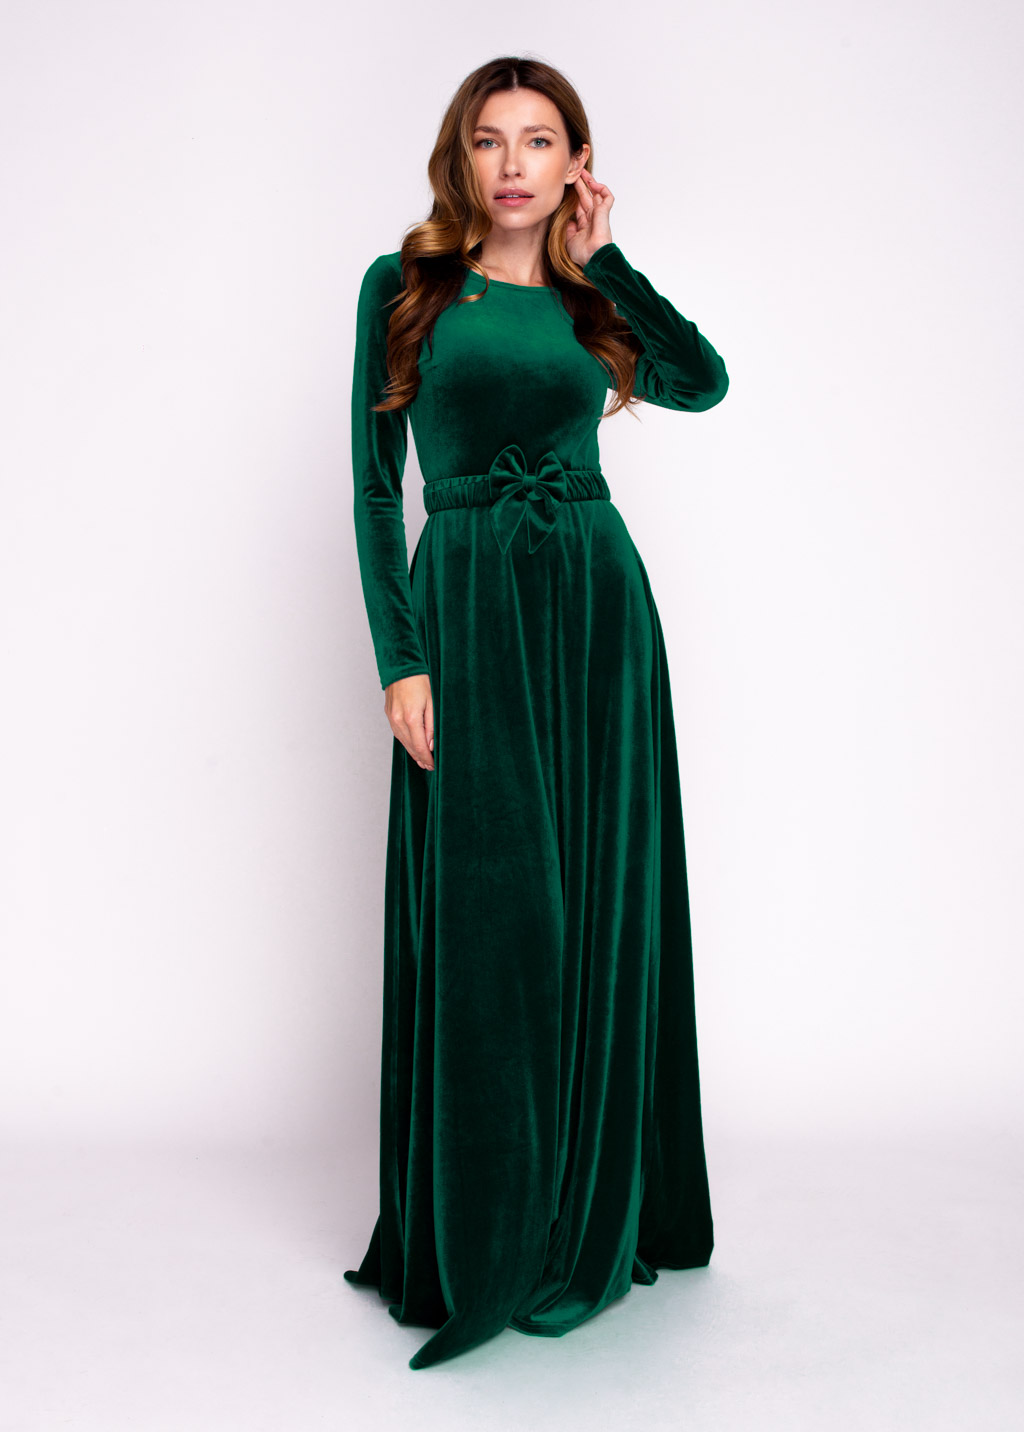 Emerald green velvet long dress with belt